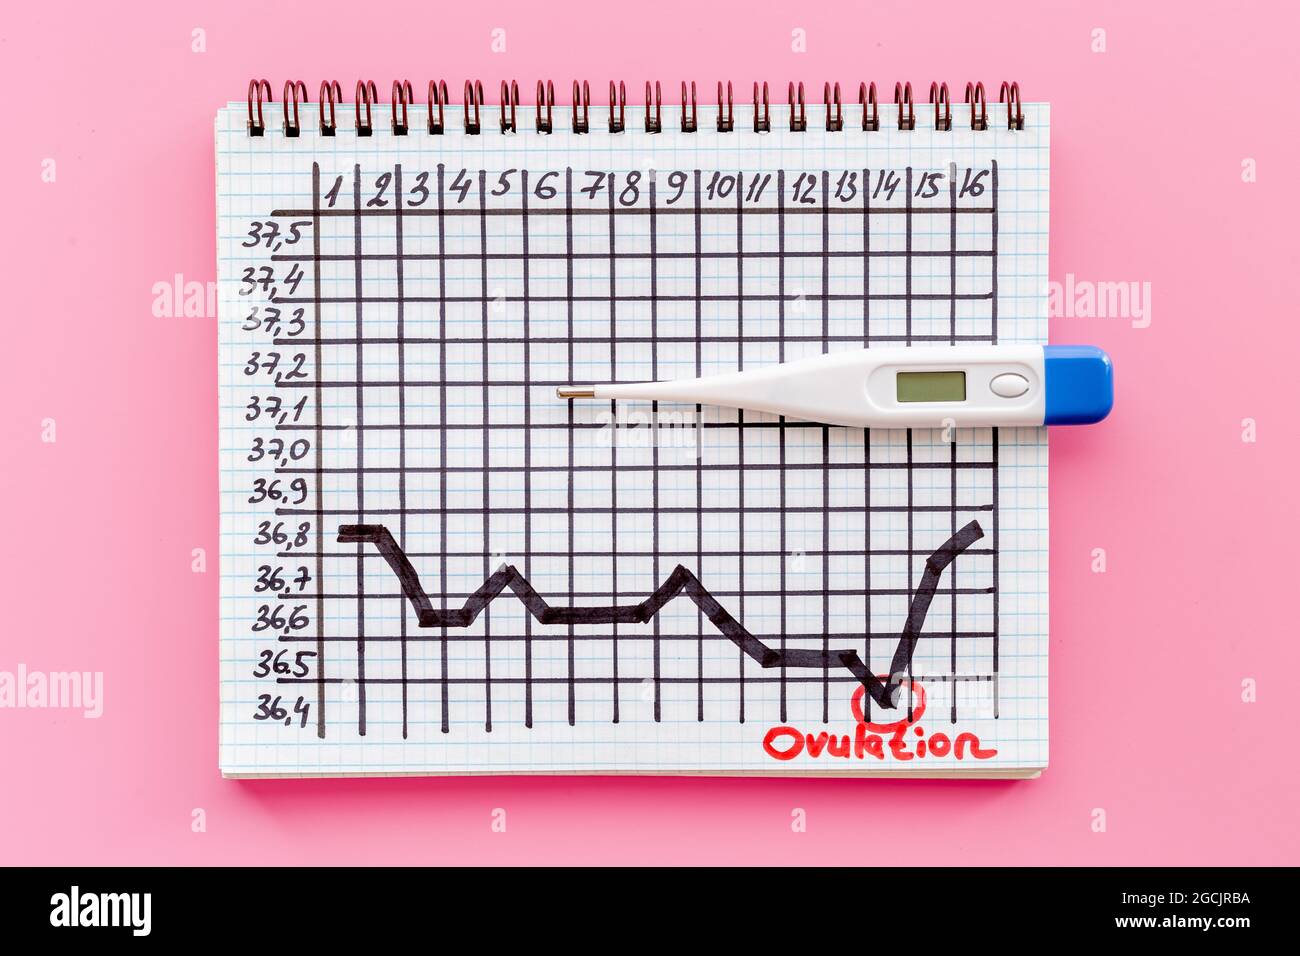 Tabella della temperatura di ovulazione basale con termometro